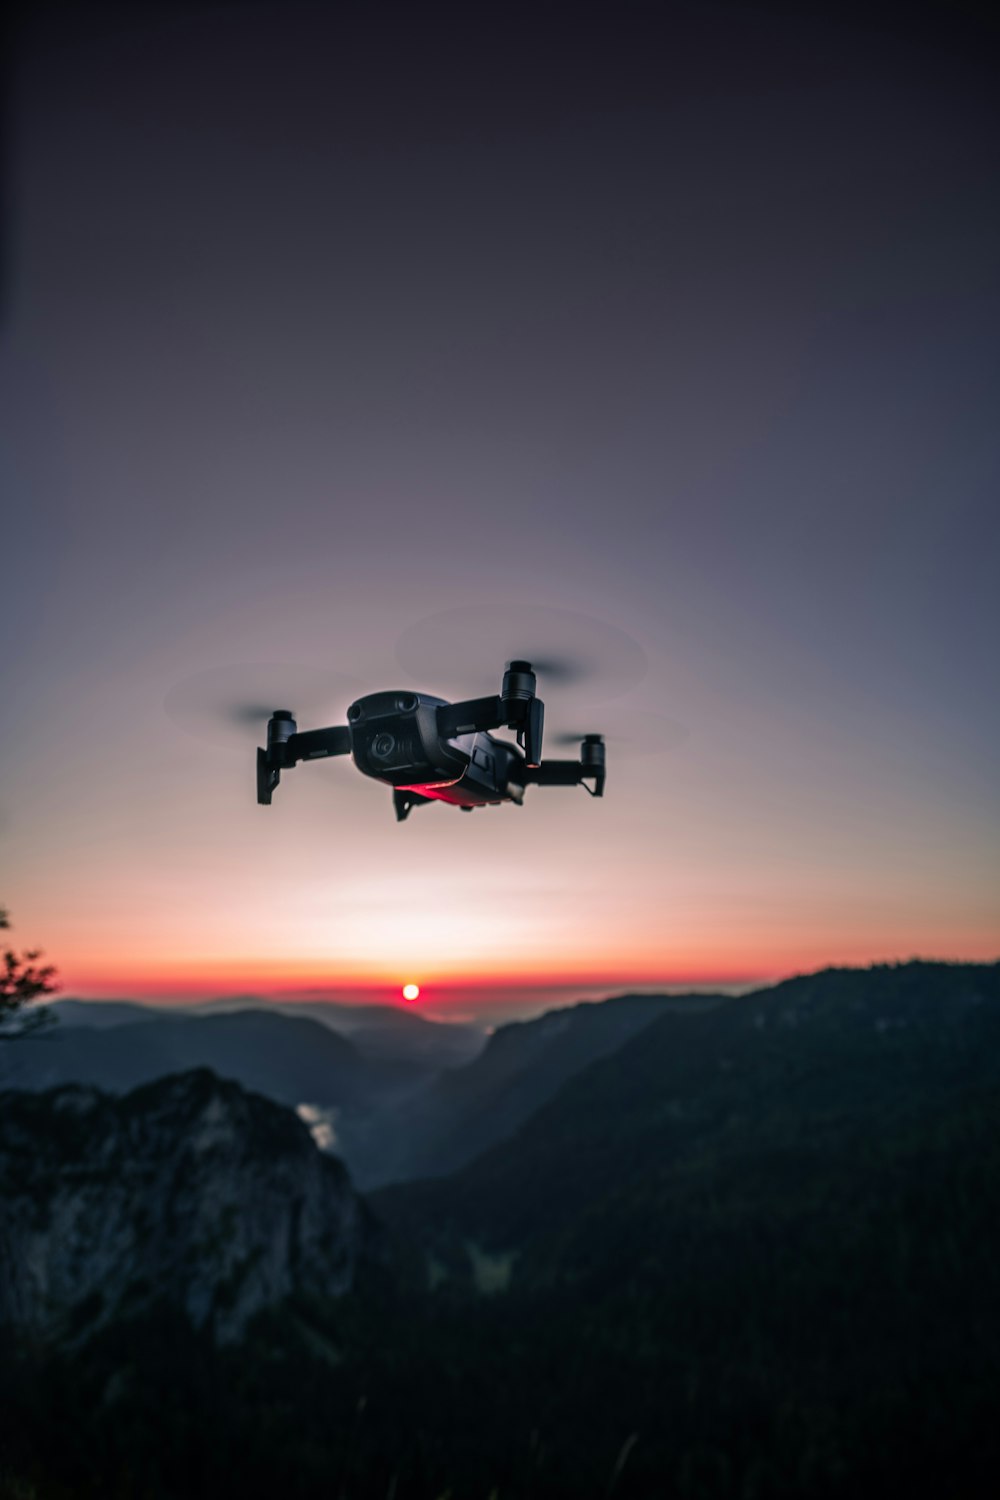 Ver fotografía del dron cuadricóptero negro en el aire durante el amanecer